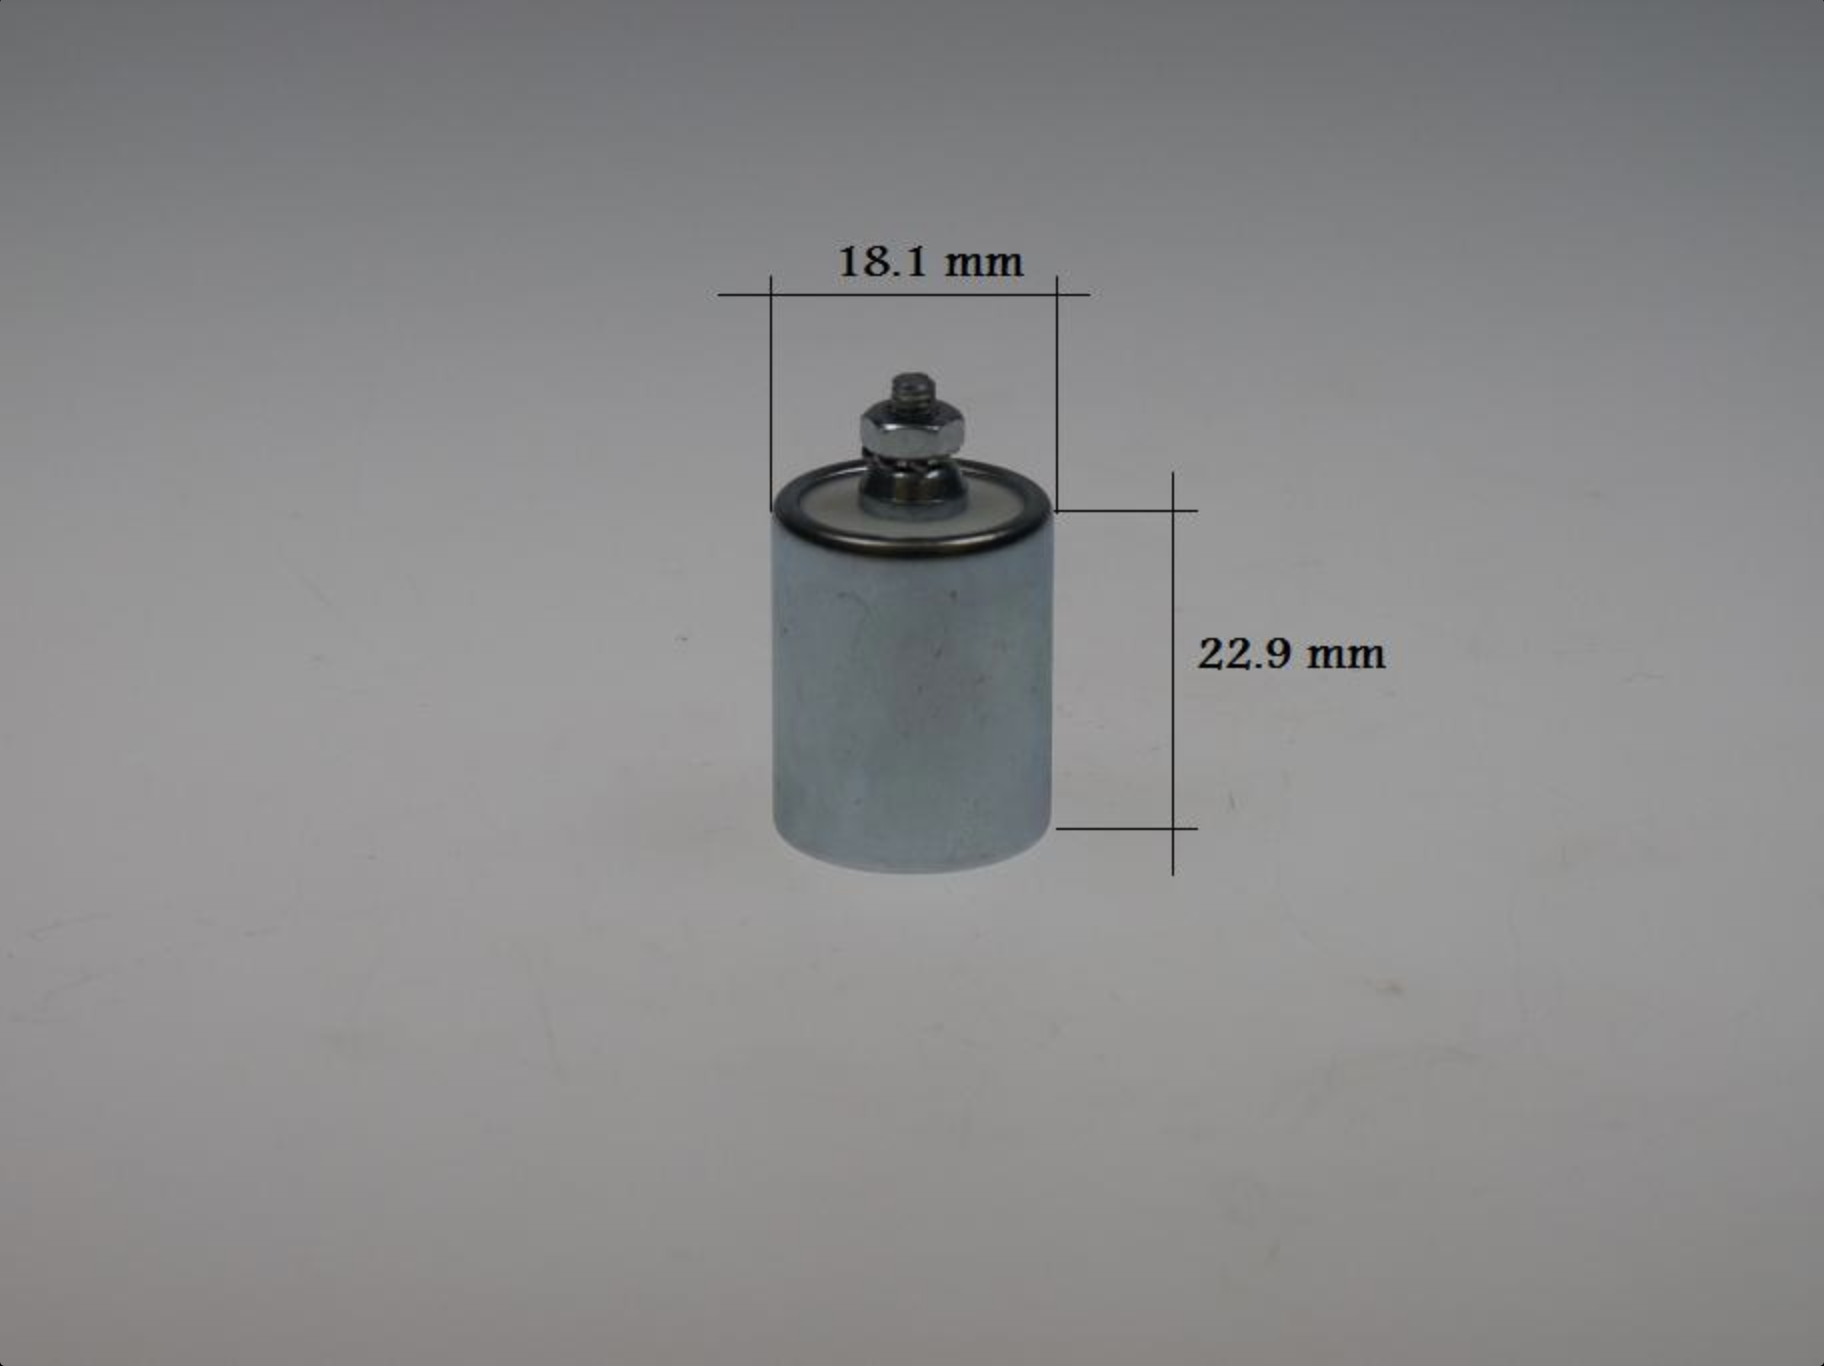 Condensator Bosch met schroef,  klein model